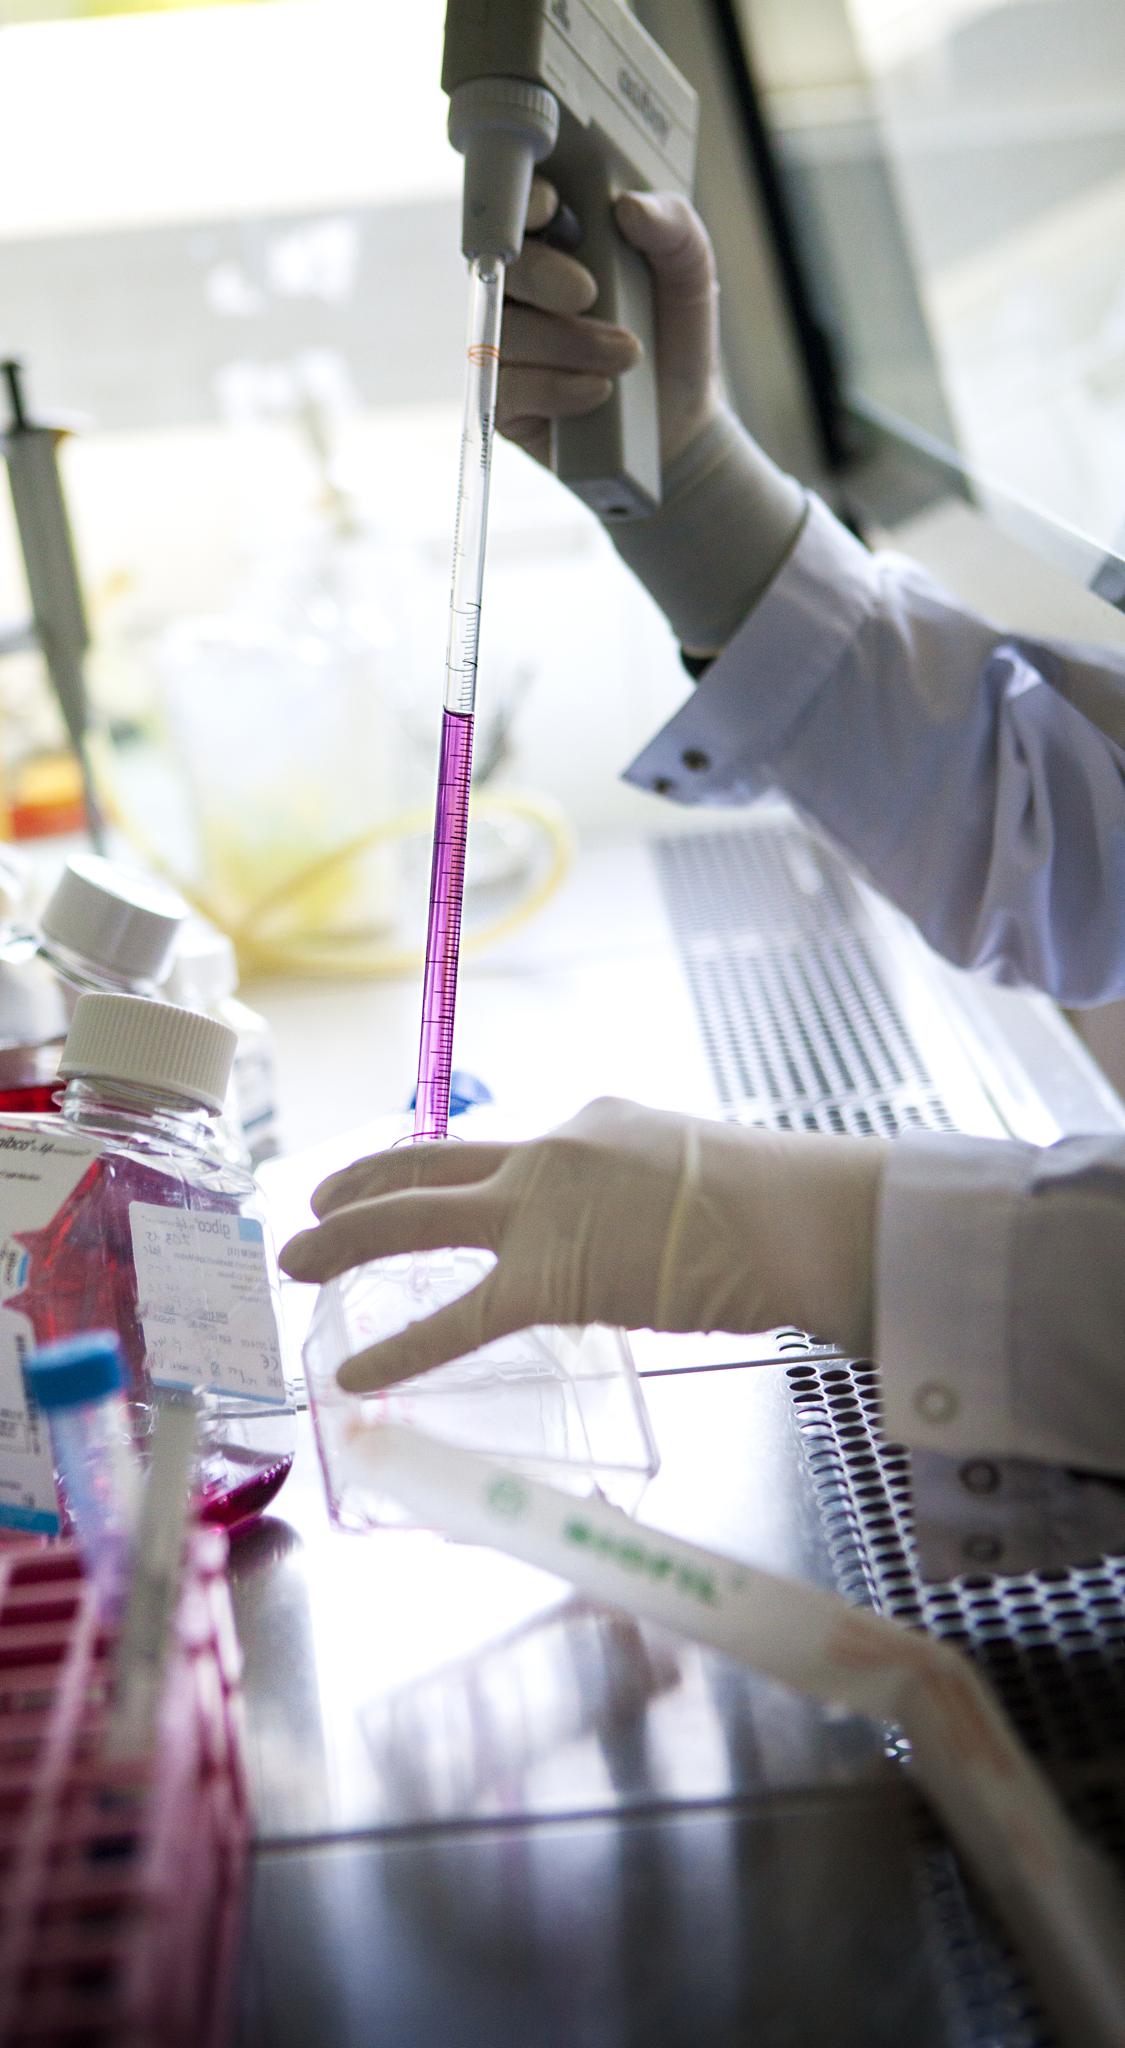 Cancer du foie: médoc «OGM» à l’essai 